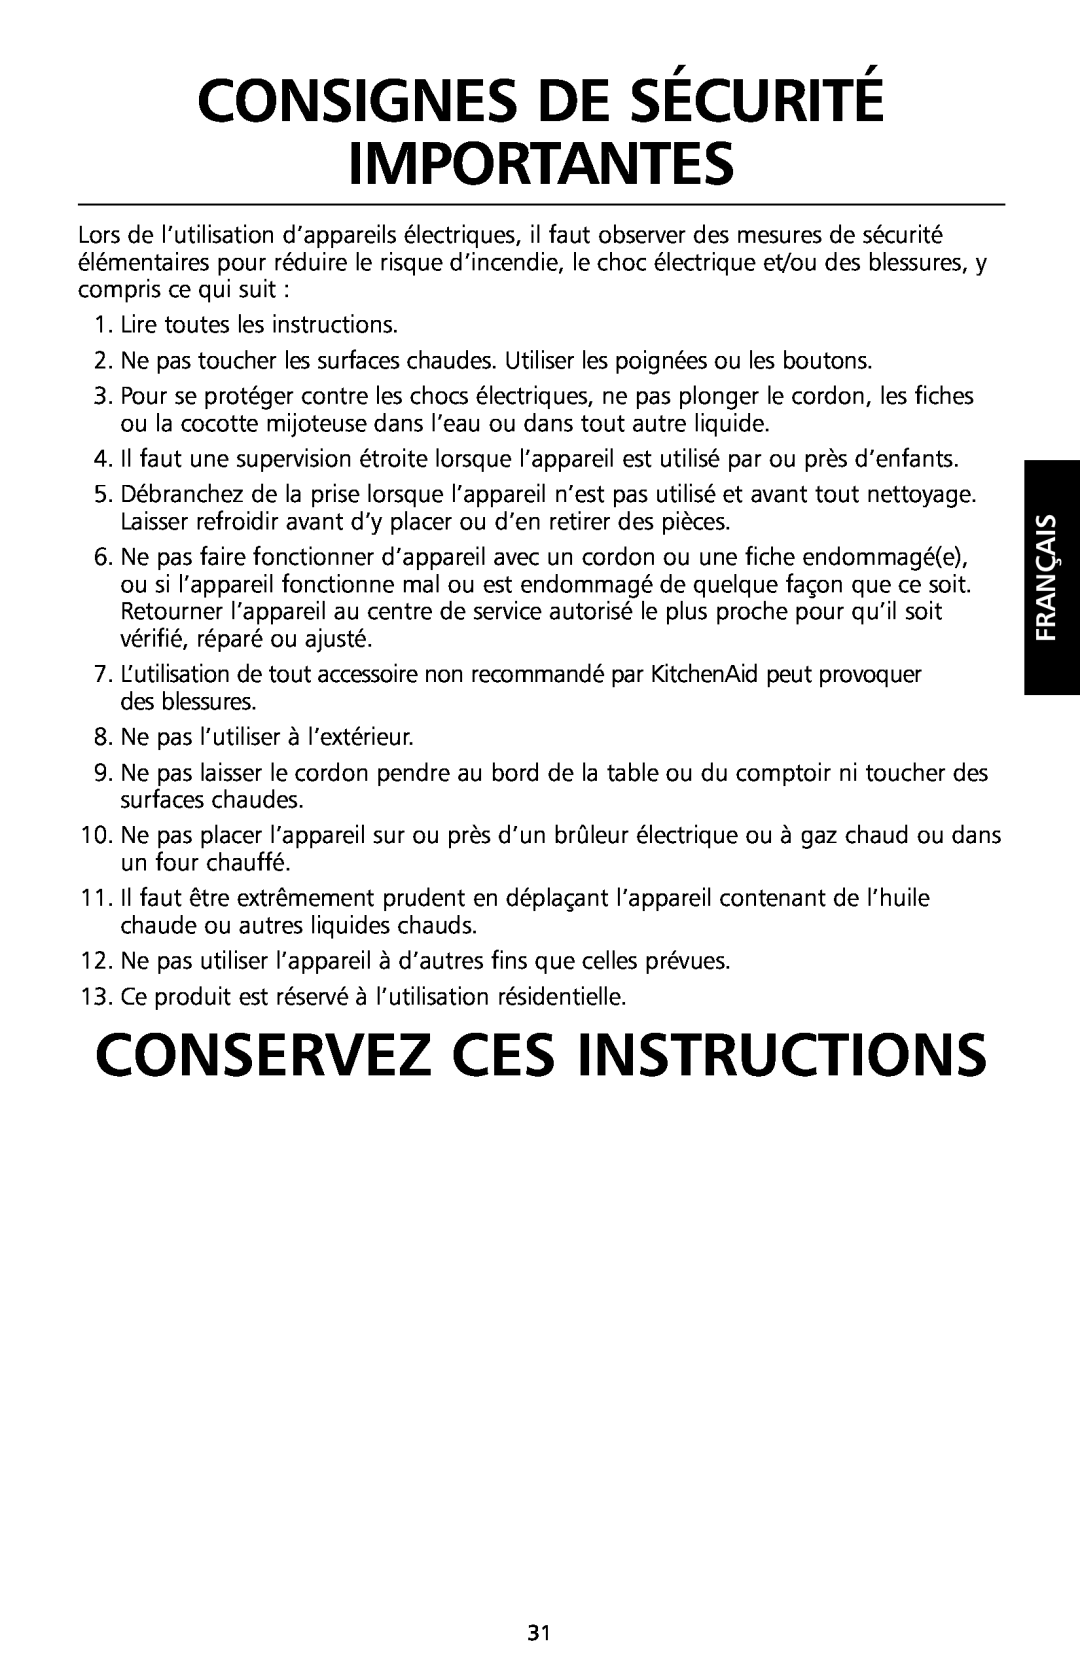 KitchenAid KSC700 manual Consignes De Sécurité Importantes, Conservez Ces Instructions, Français 